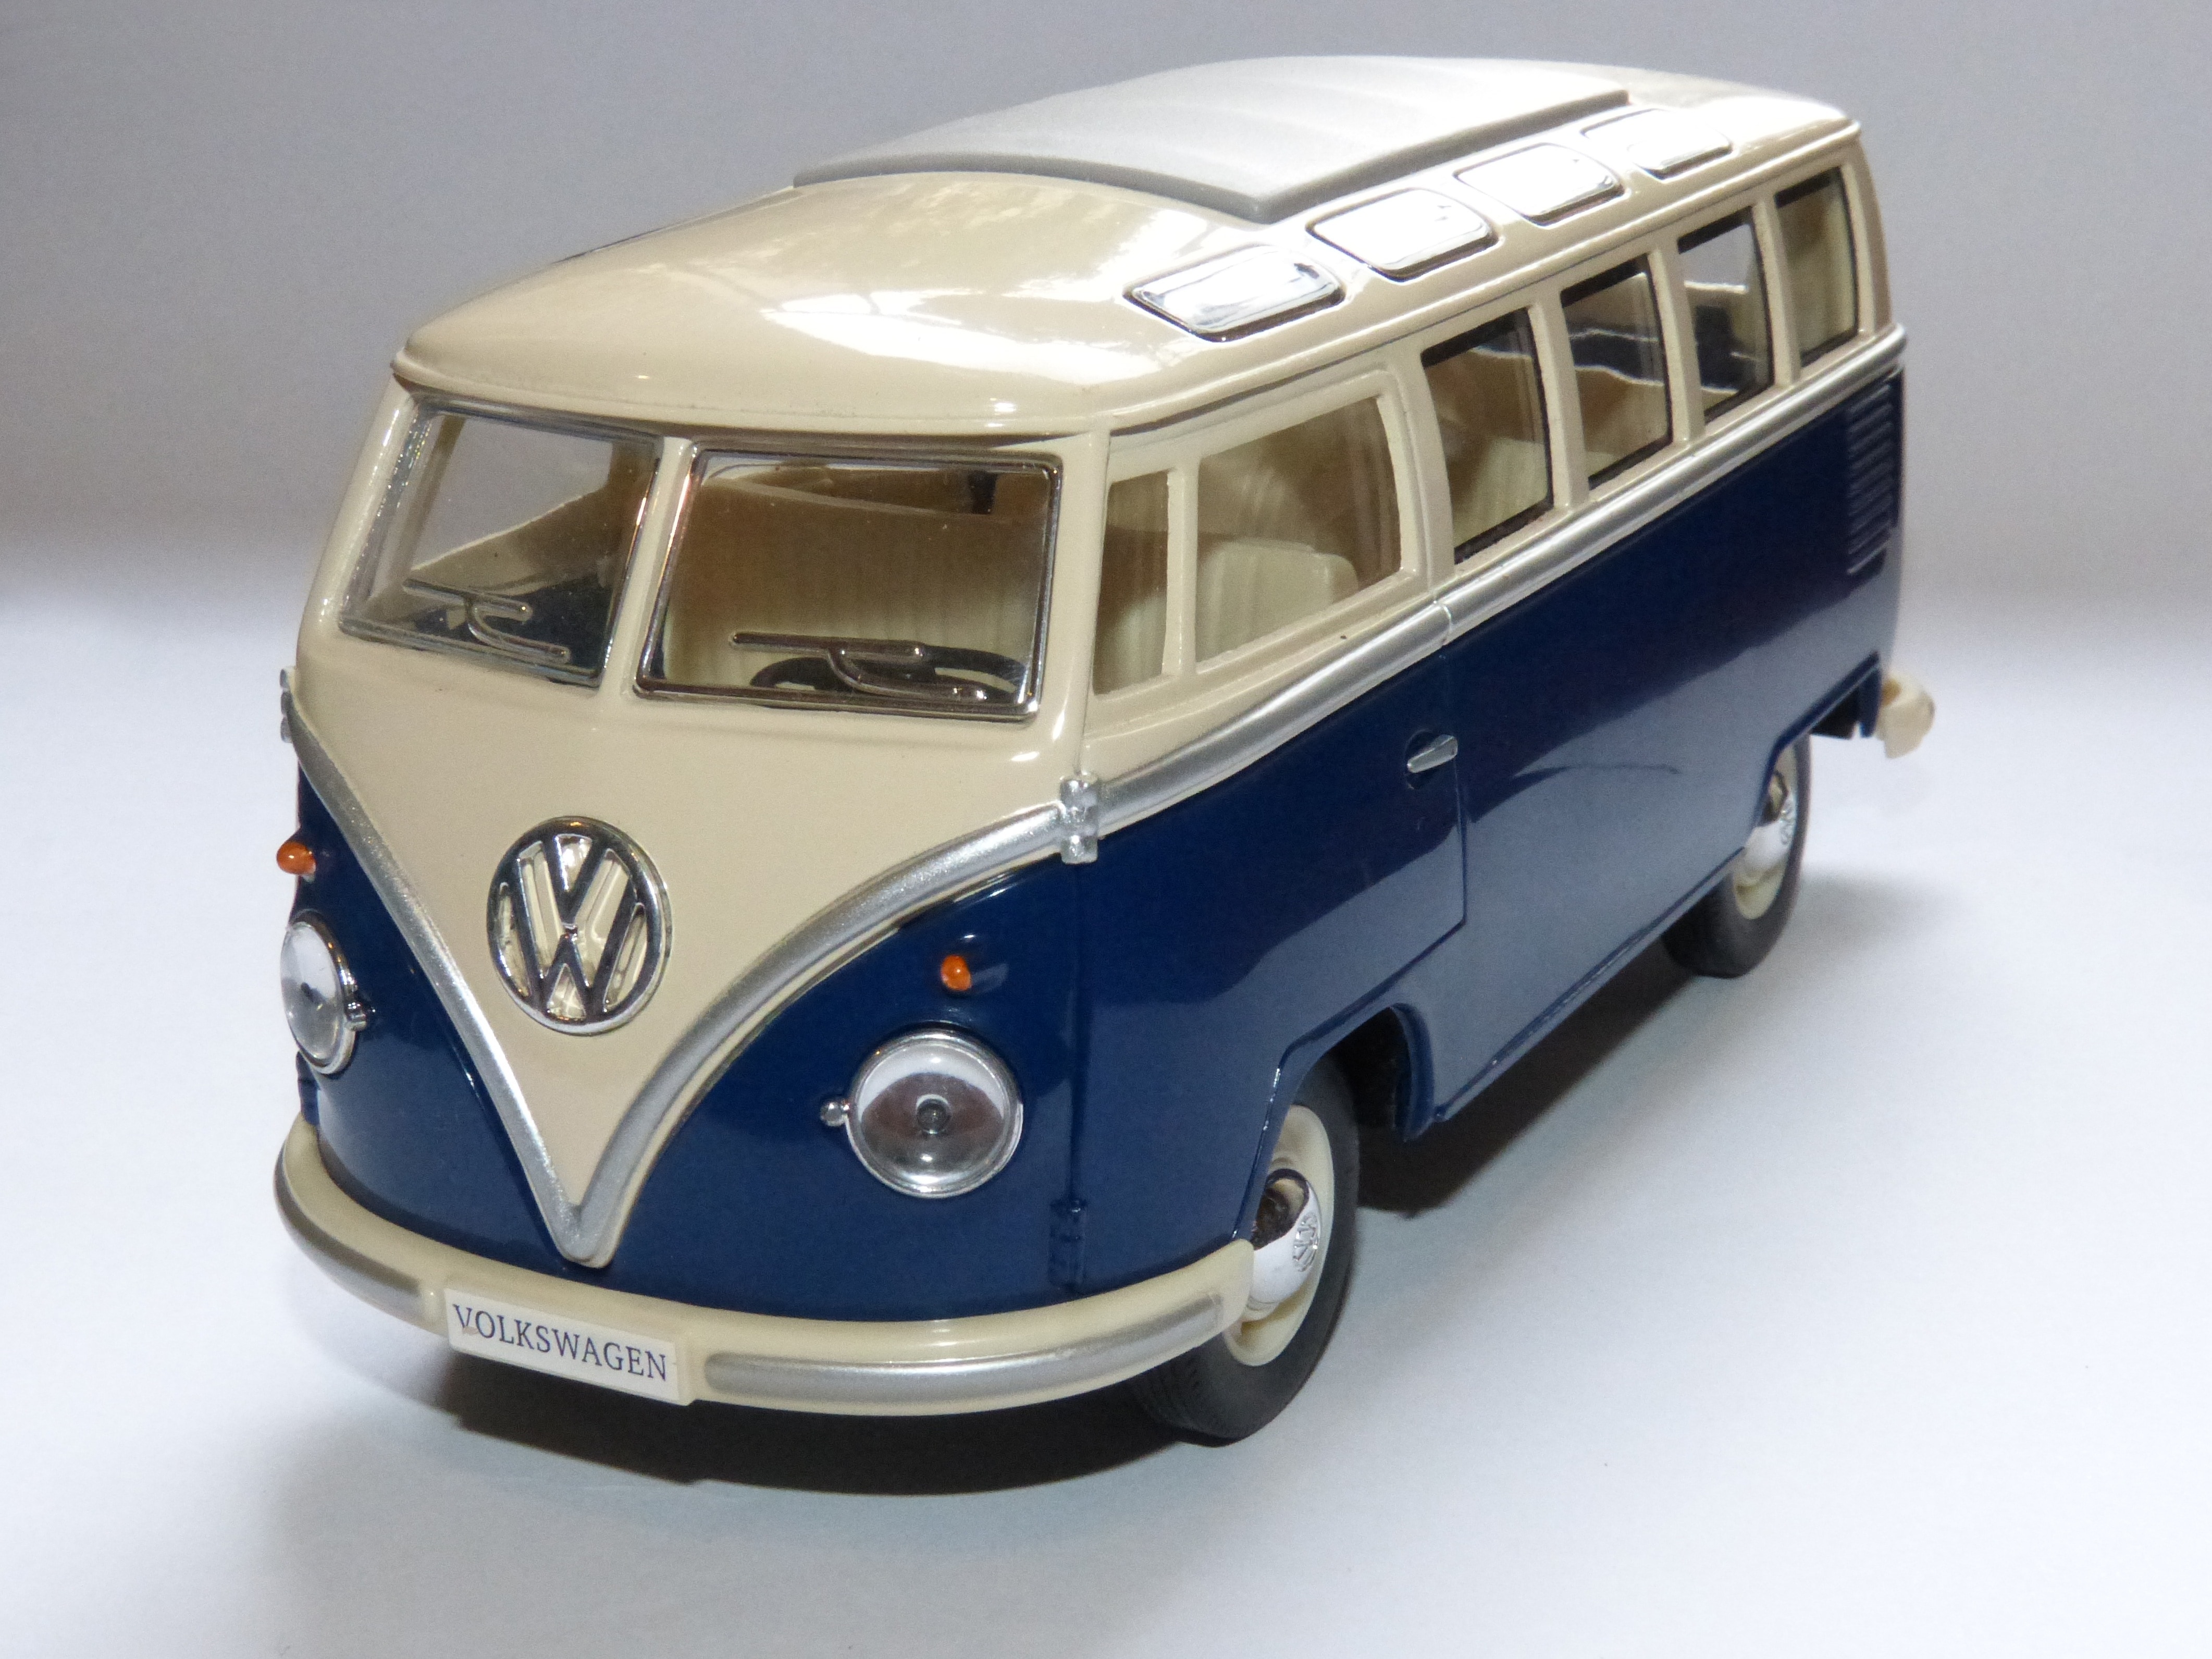 3840x2160 wallpaper | Toy, Van, Volkswagen, Miniature, car, collector's ...